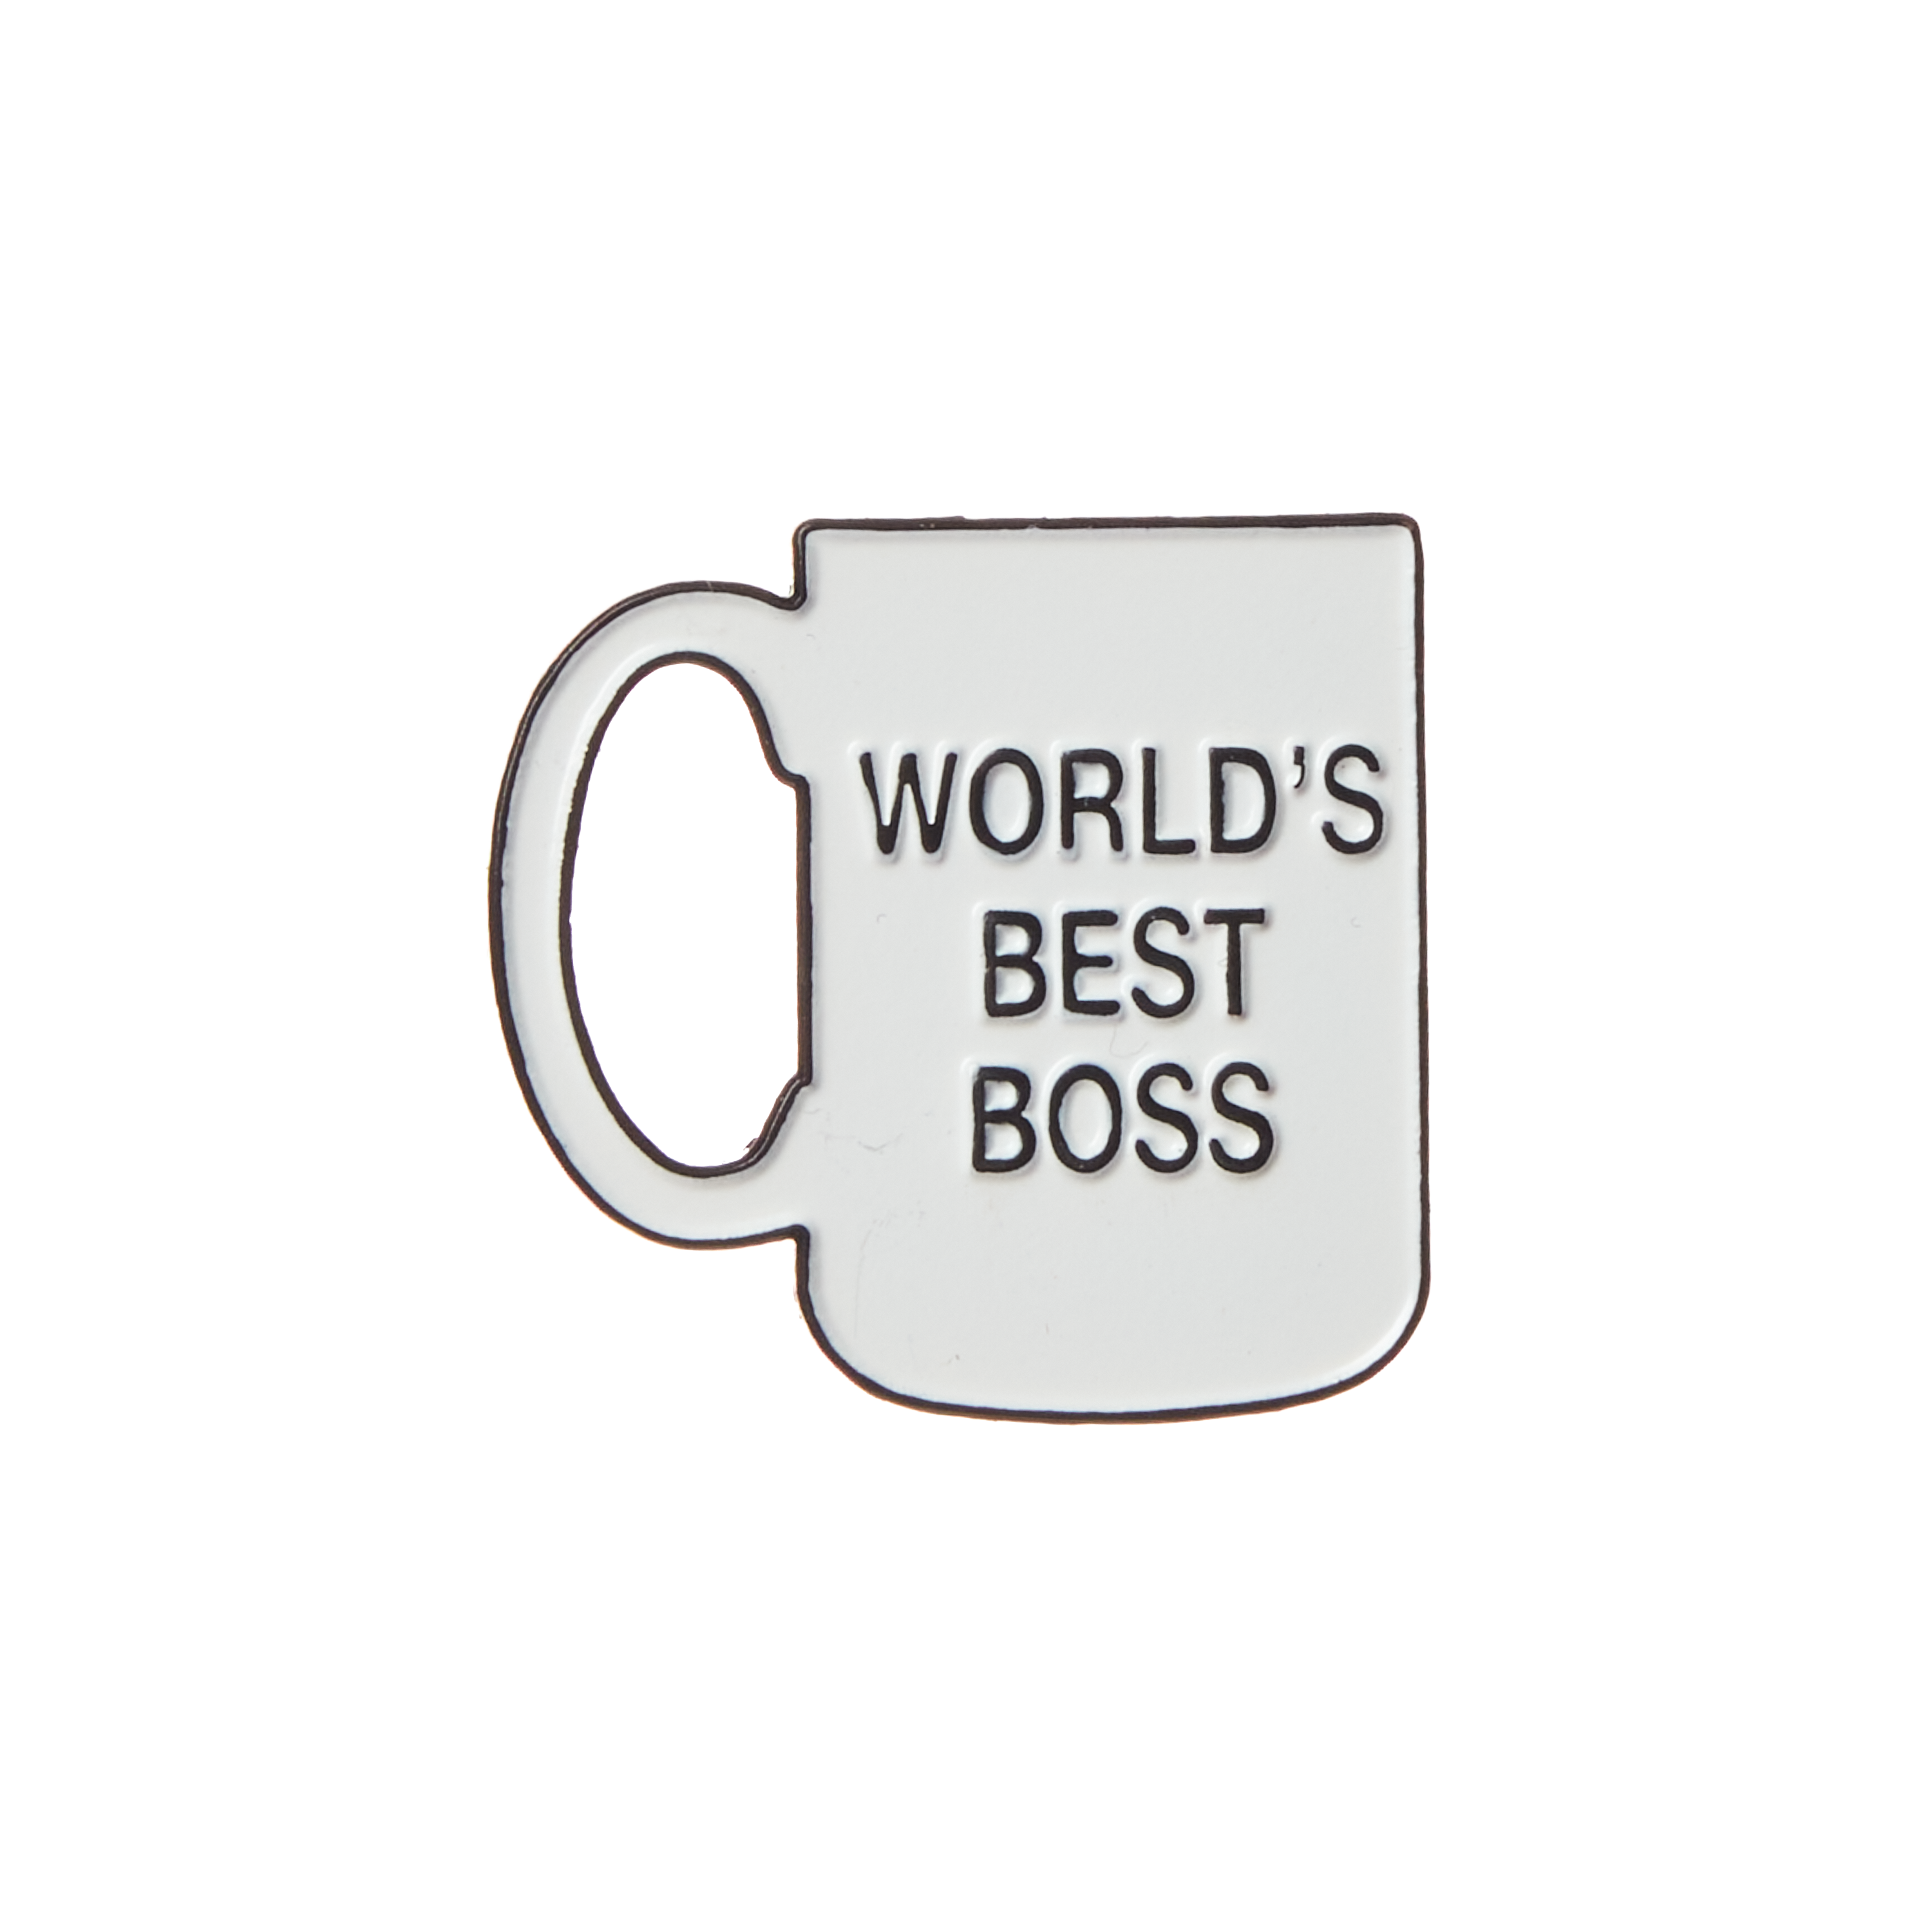 Worlds Best Boss Mug Near, Best Boss Coffee Mug